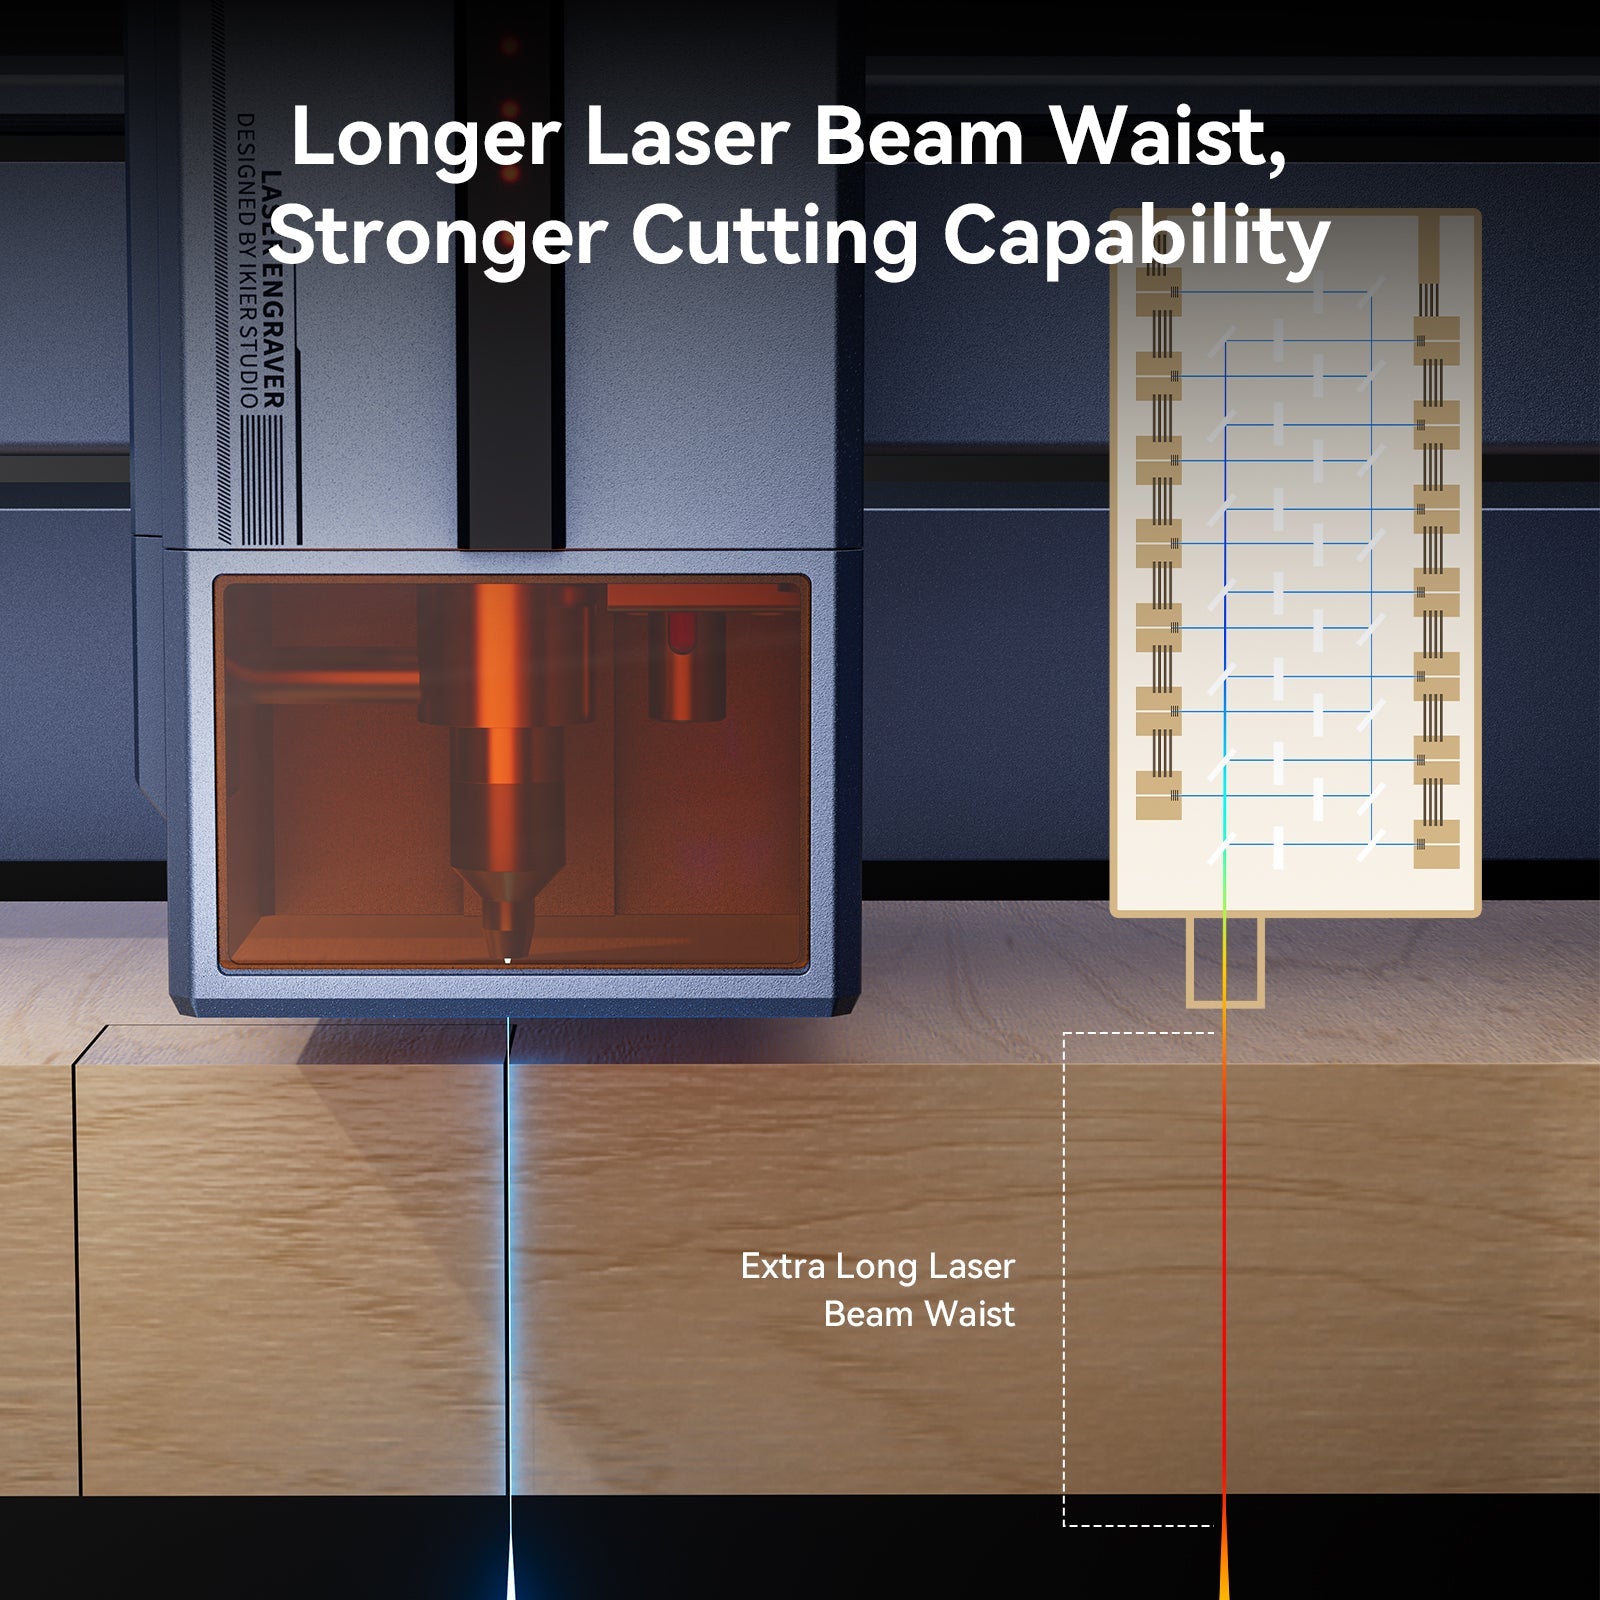 Longer laser beam waist